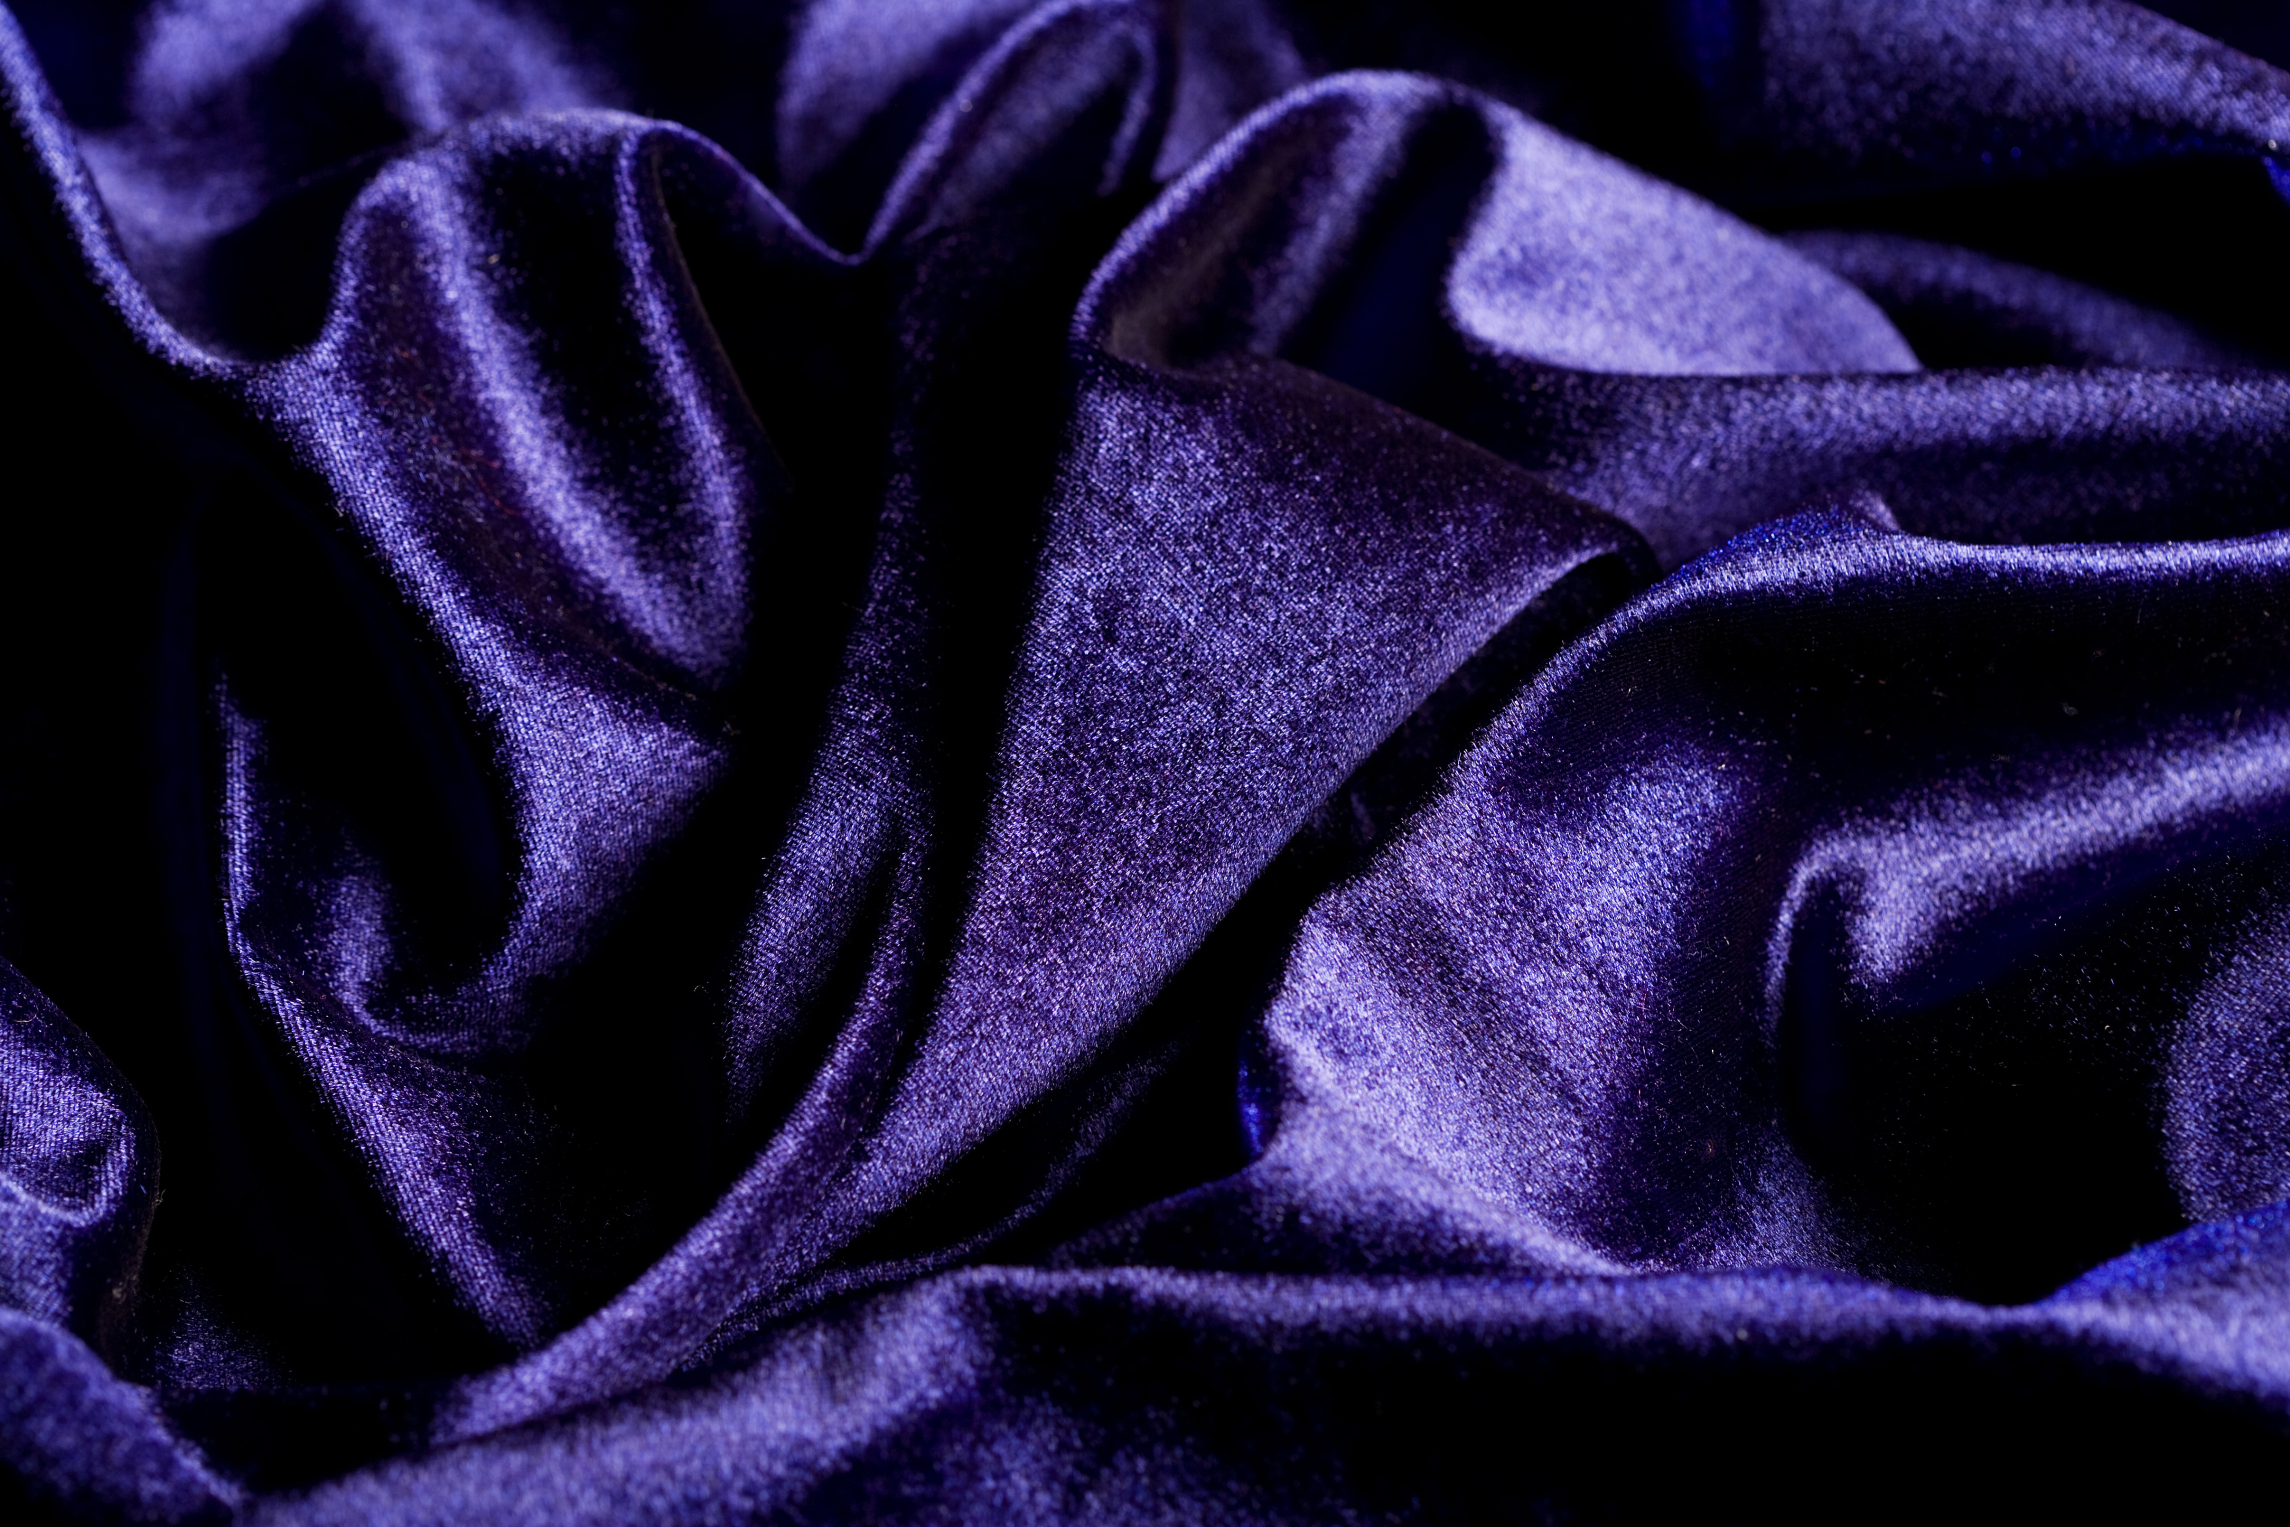 How to Bleach Velvet Fabric